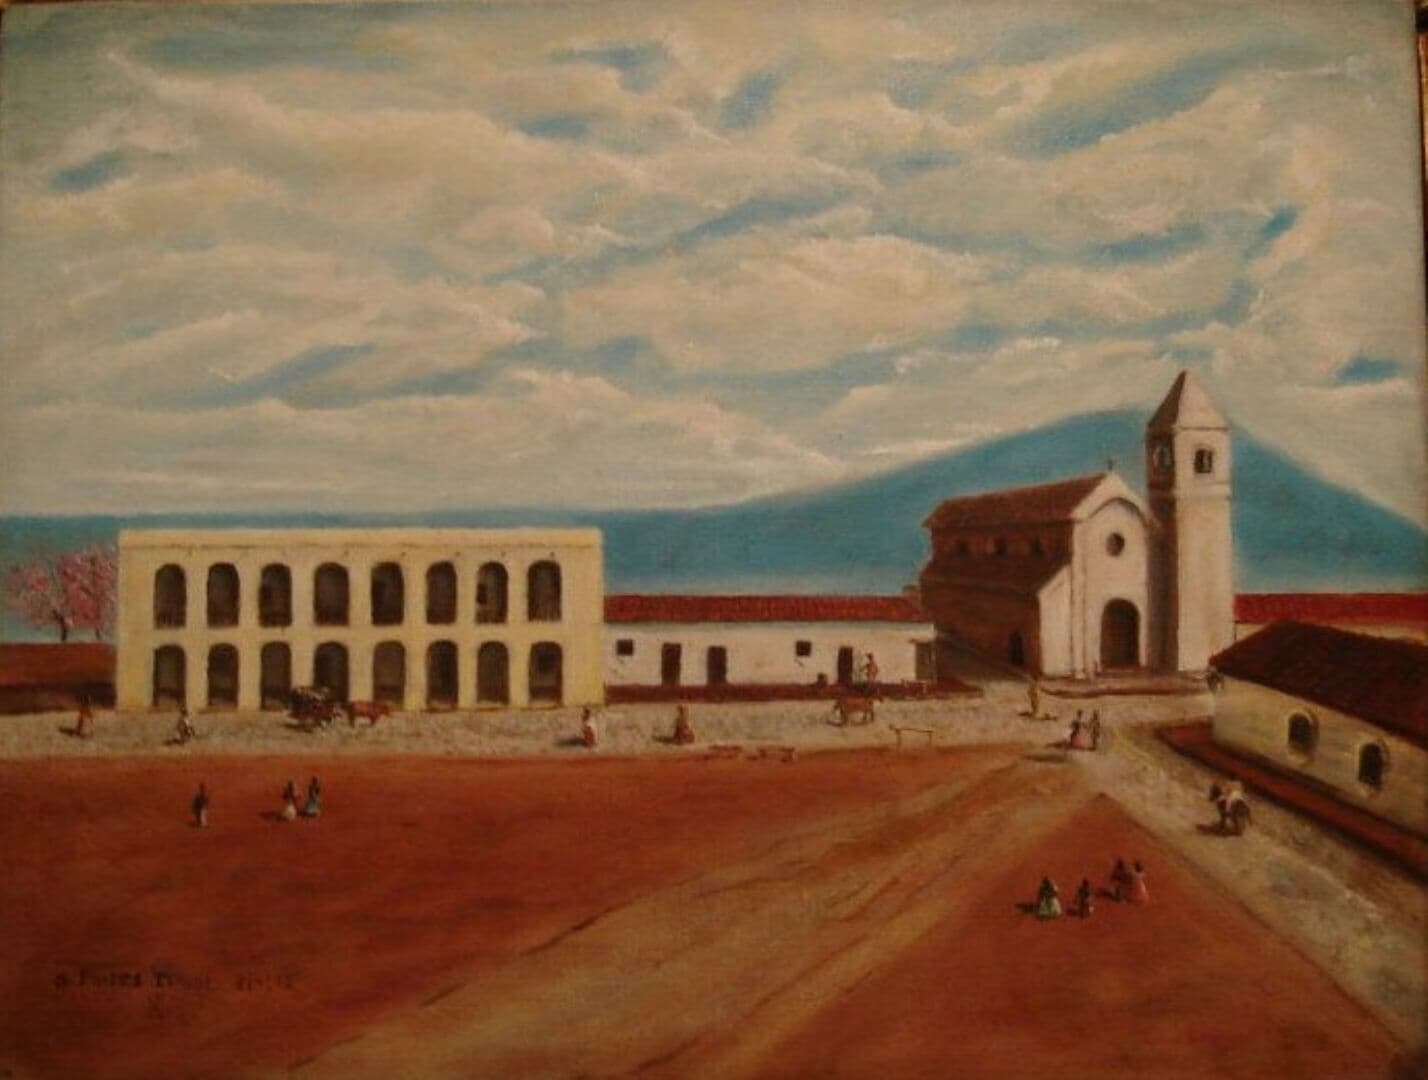 San Miguel de Tucumán photo